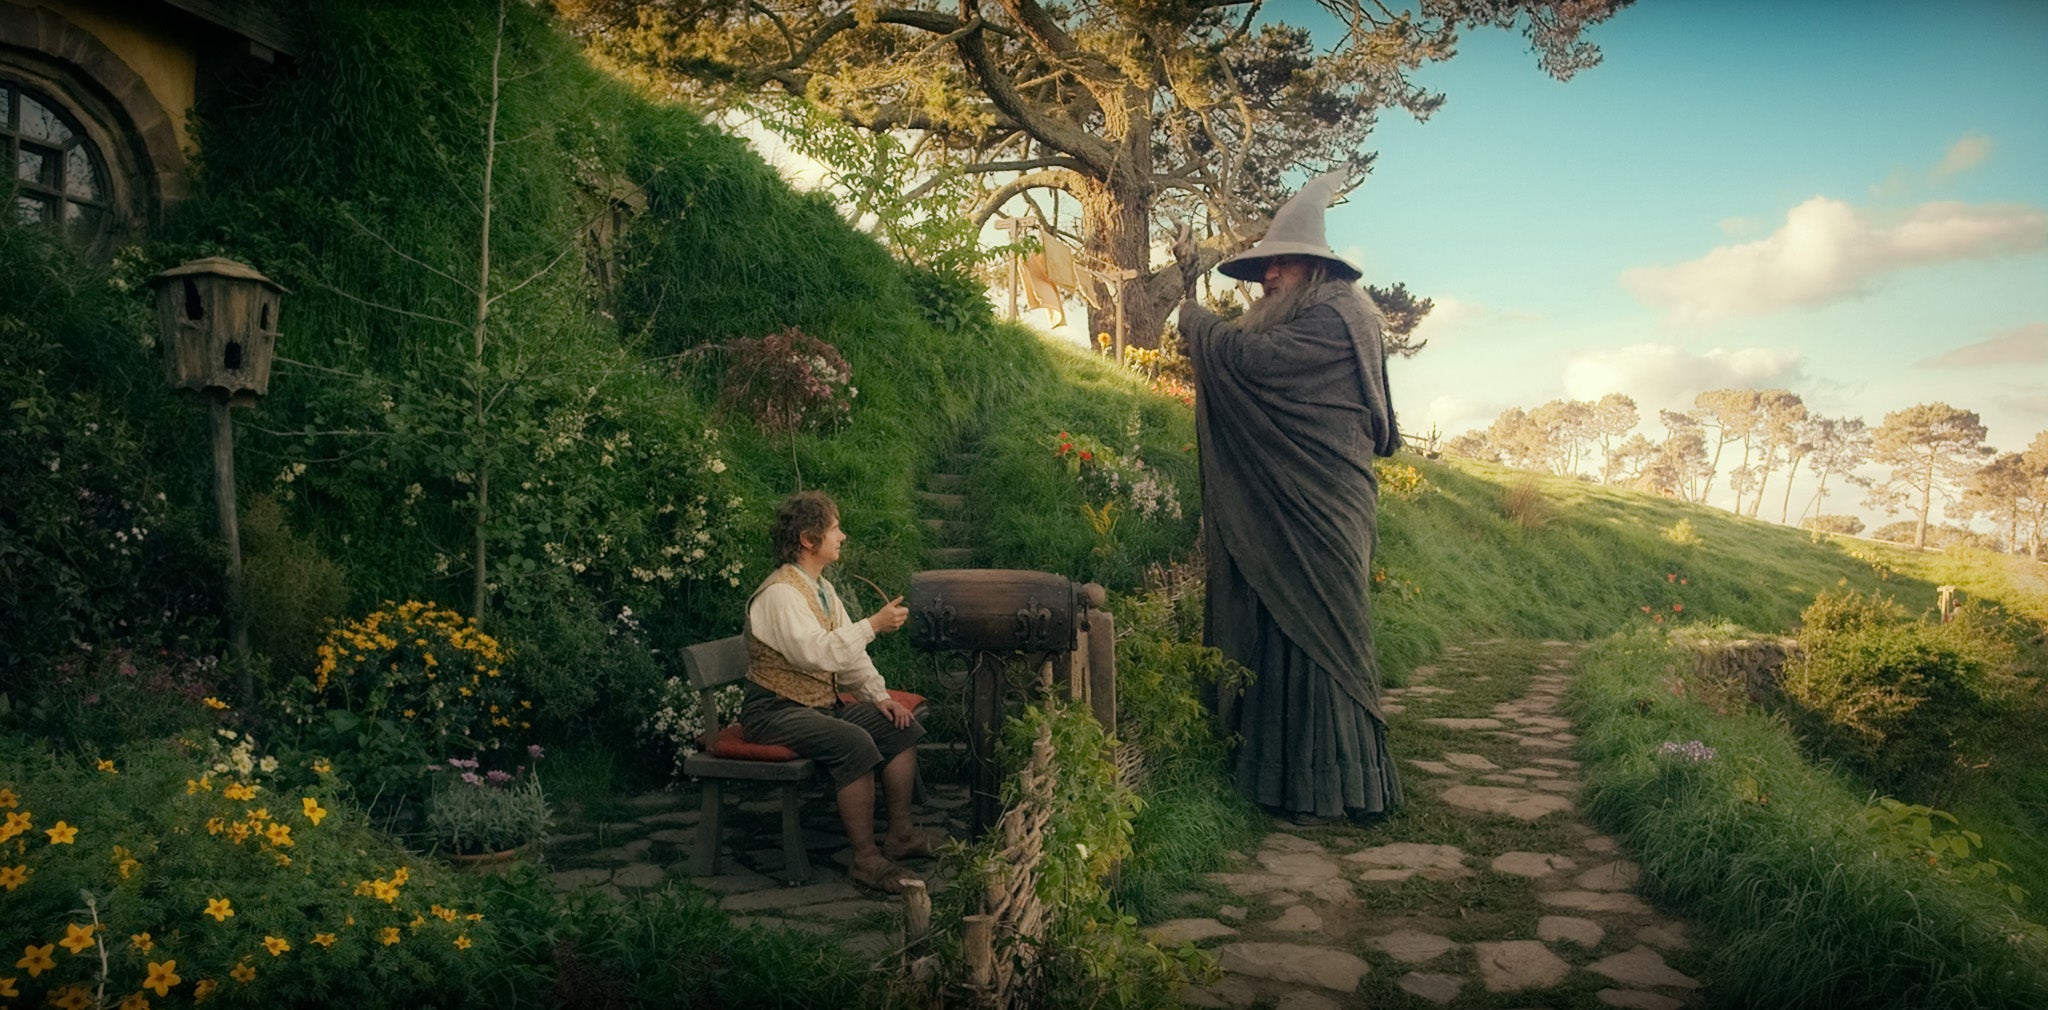 The 'Hobbit' Dwarves Actors